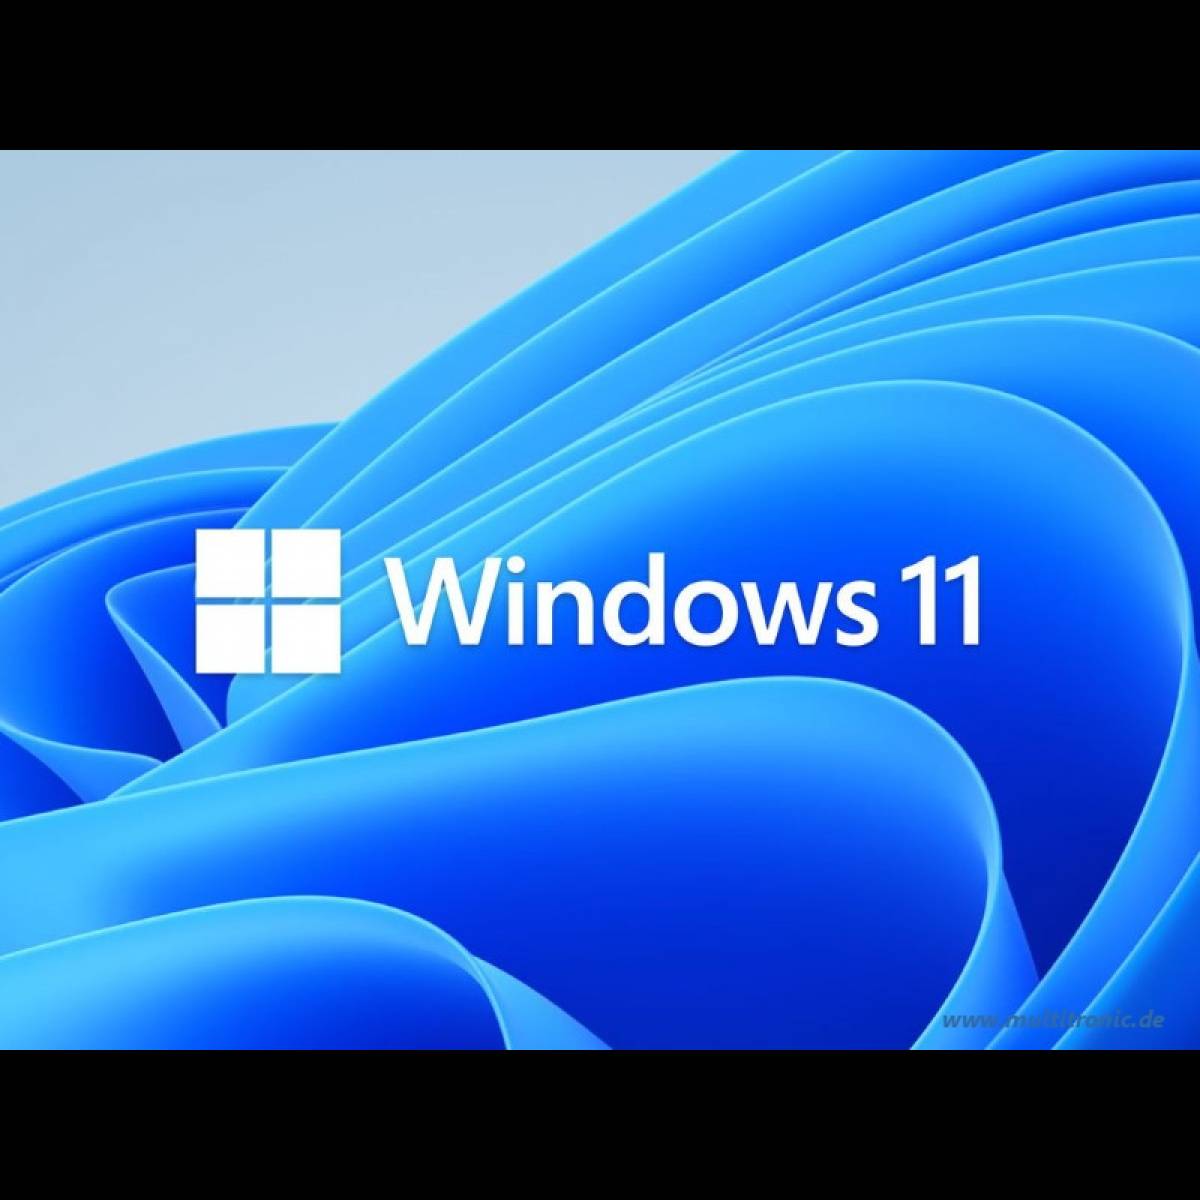 Windows 11 ist da